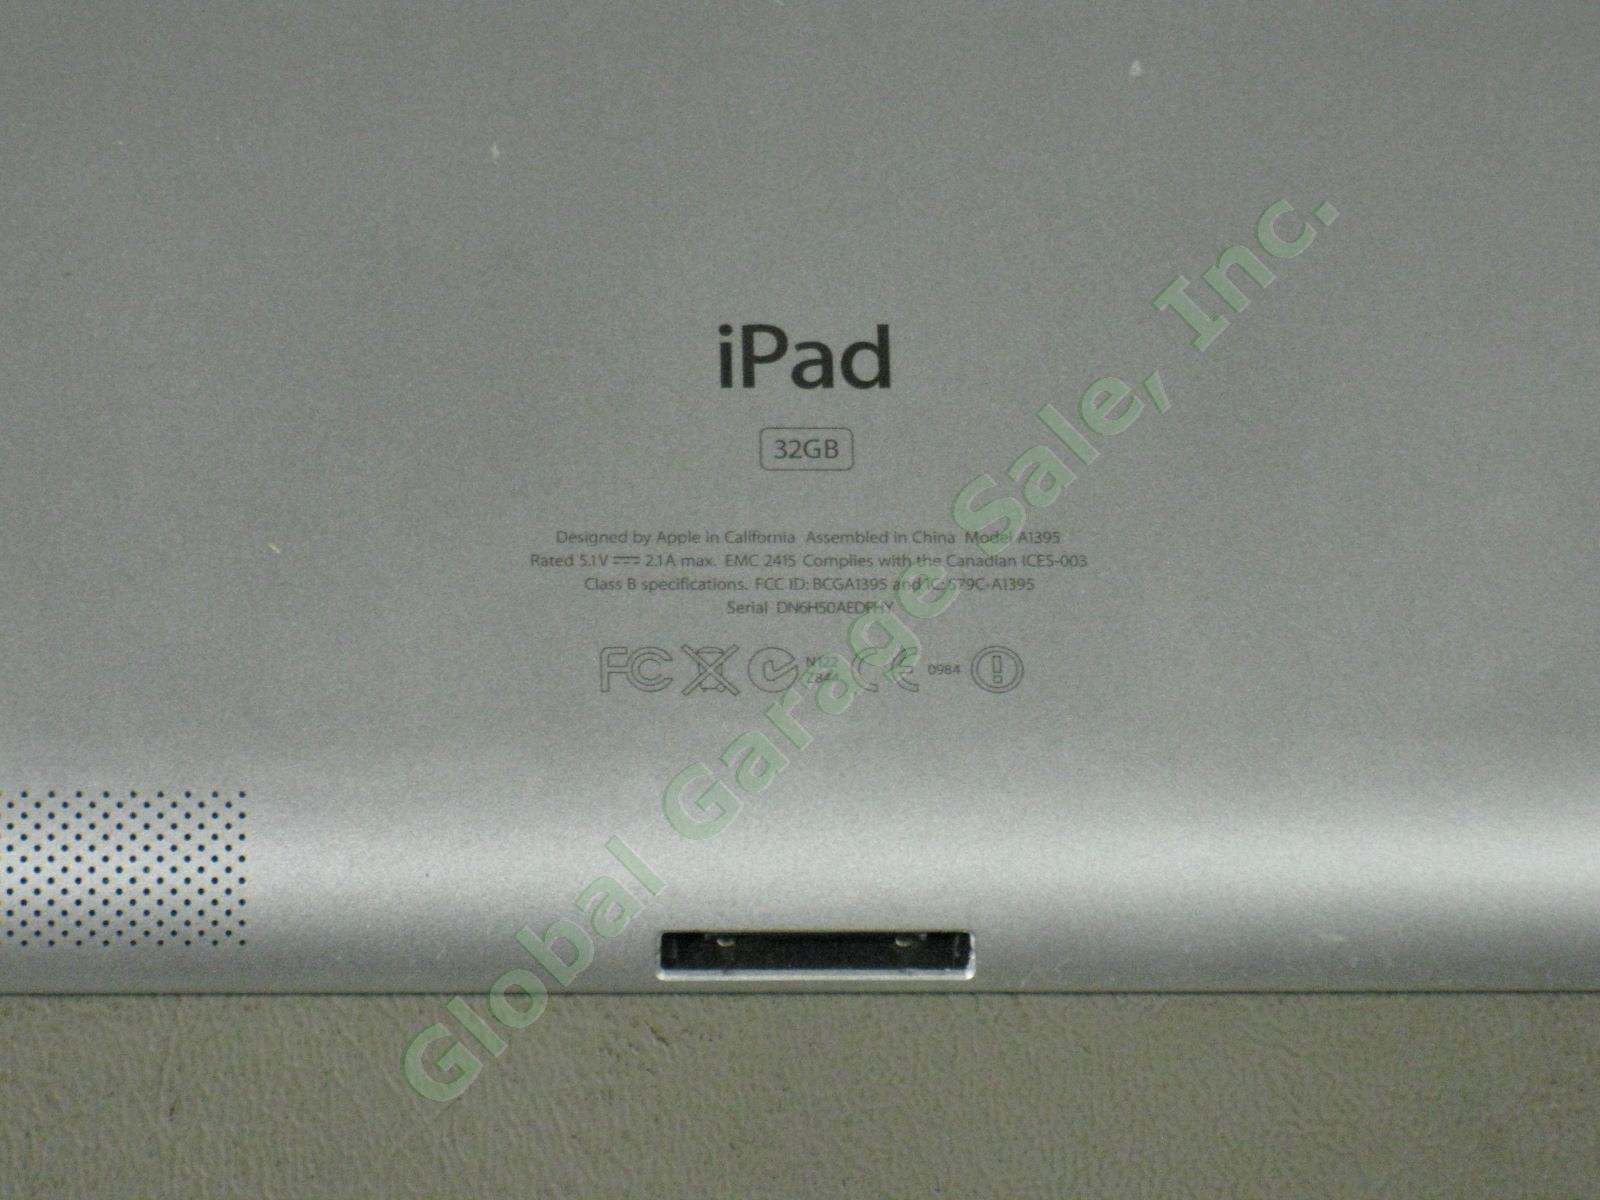 Apple iPad 2 Wifi 32GB Black Tablet Factory Reset MC770LL/A A1395 No Reserve! 4